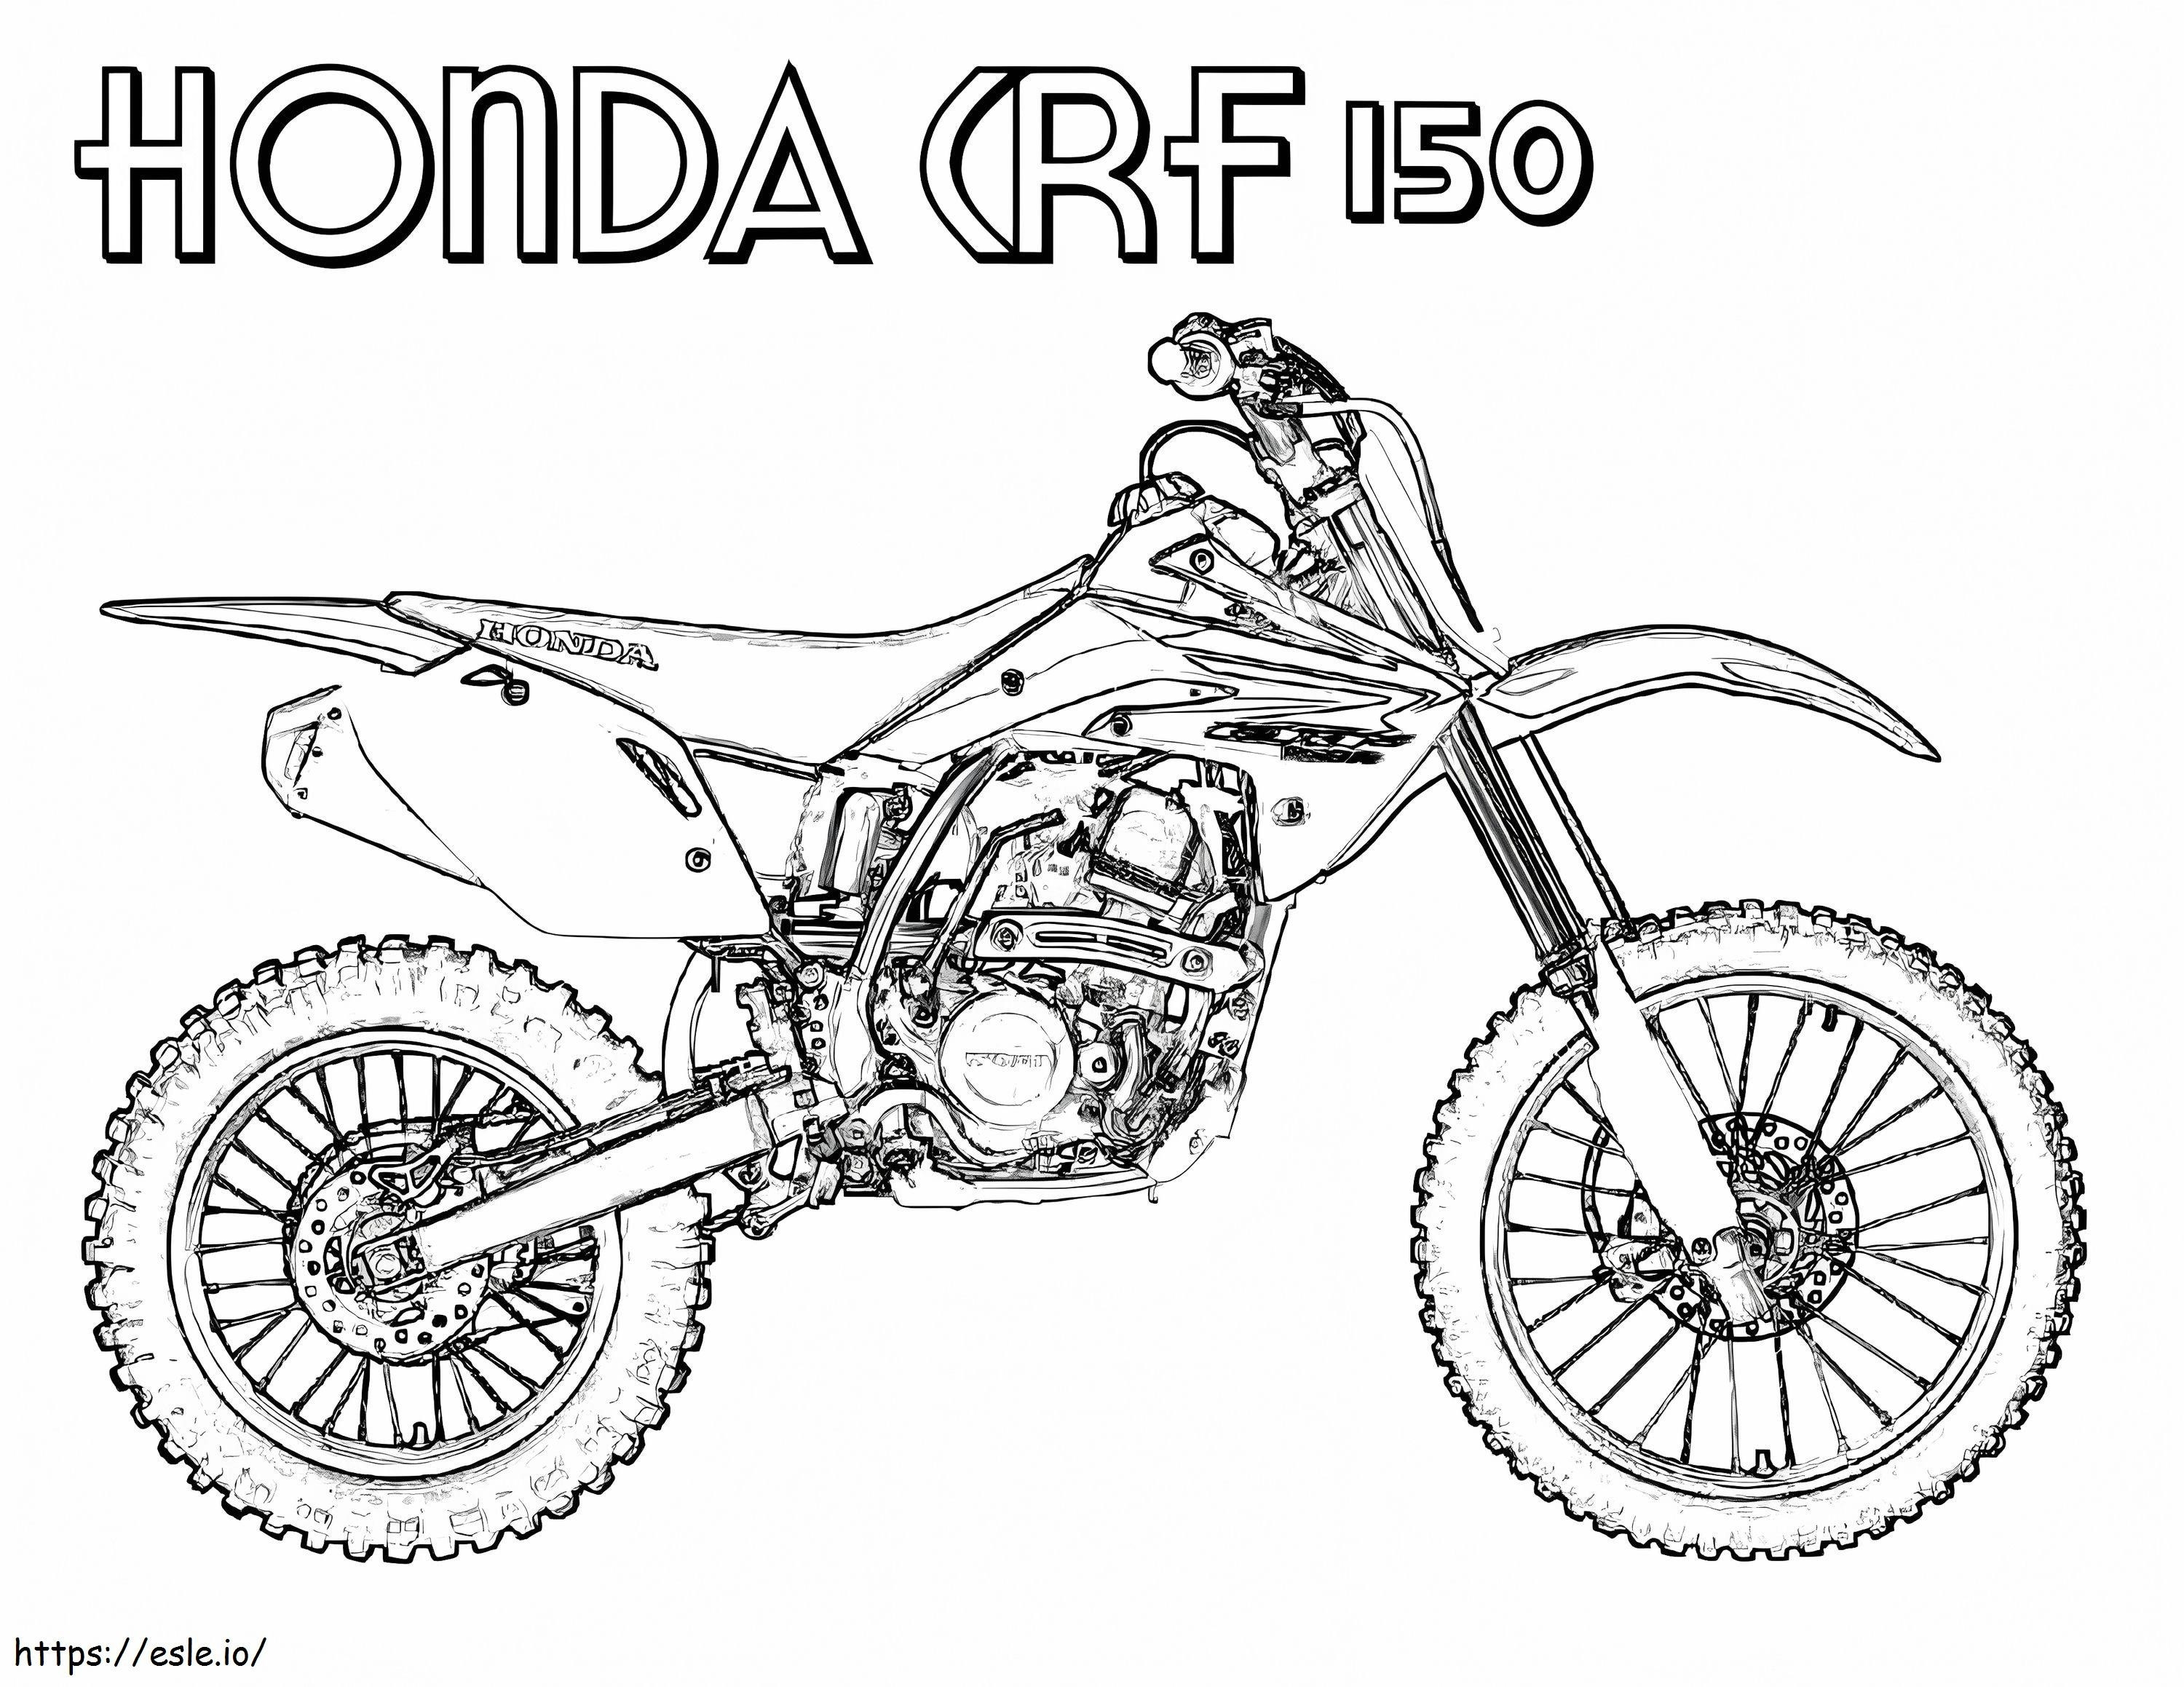 Honda CRF 150 Dirt Bike kifestő